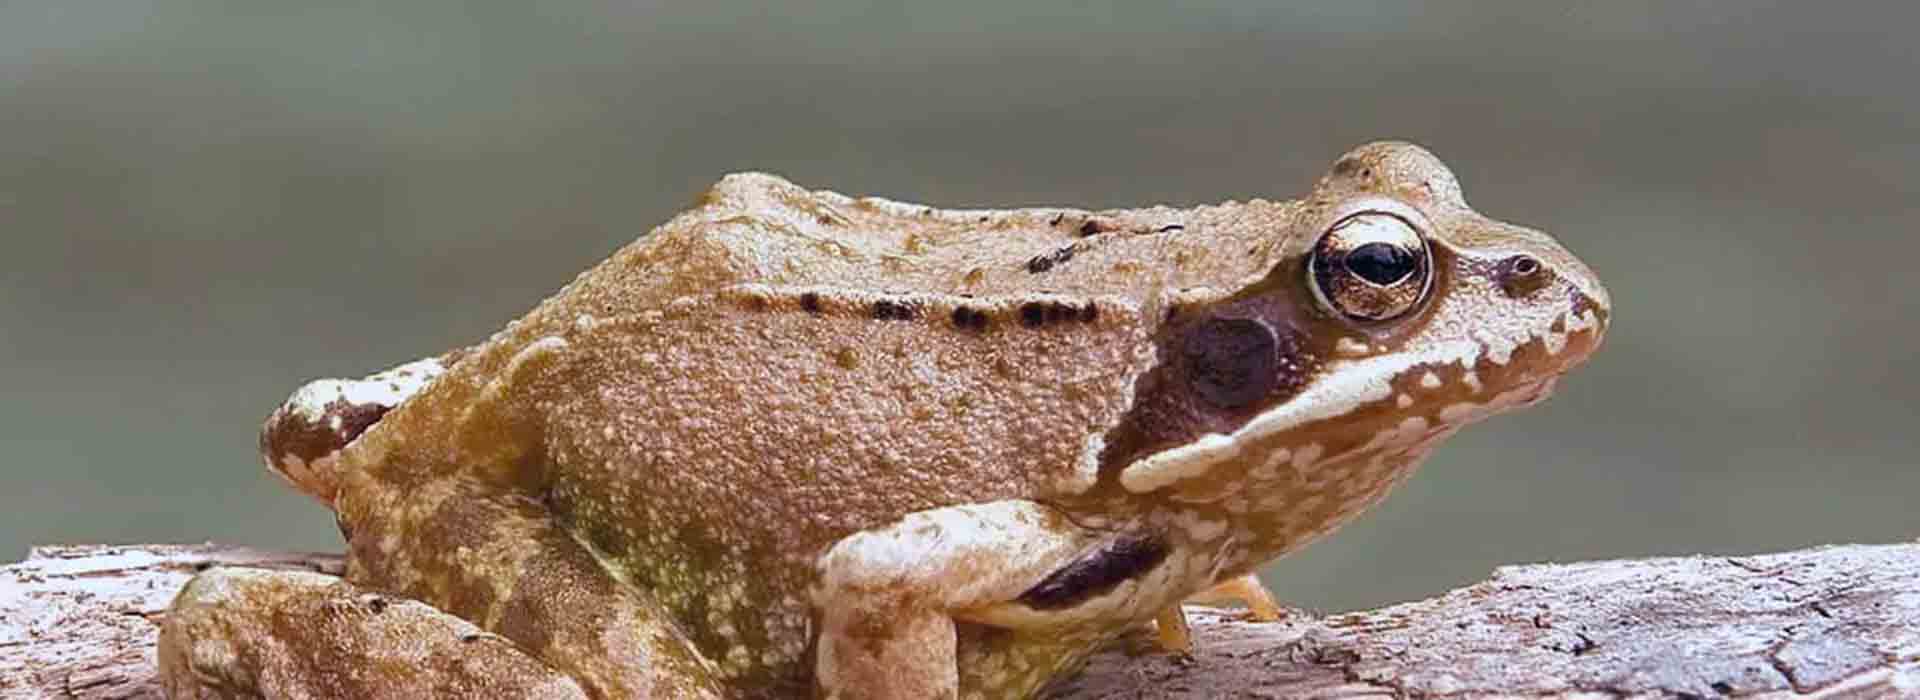 Płazy - Żaba trawna fauna Pojezierza Iławskiego